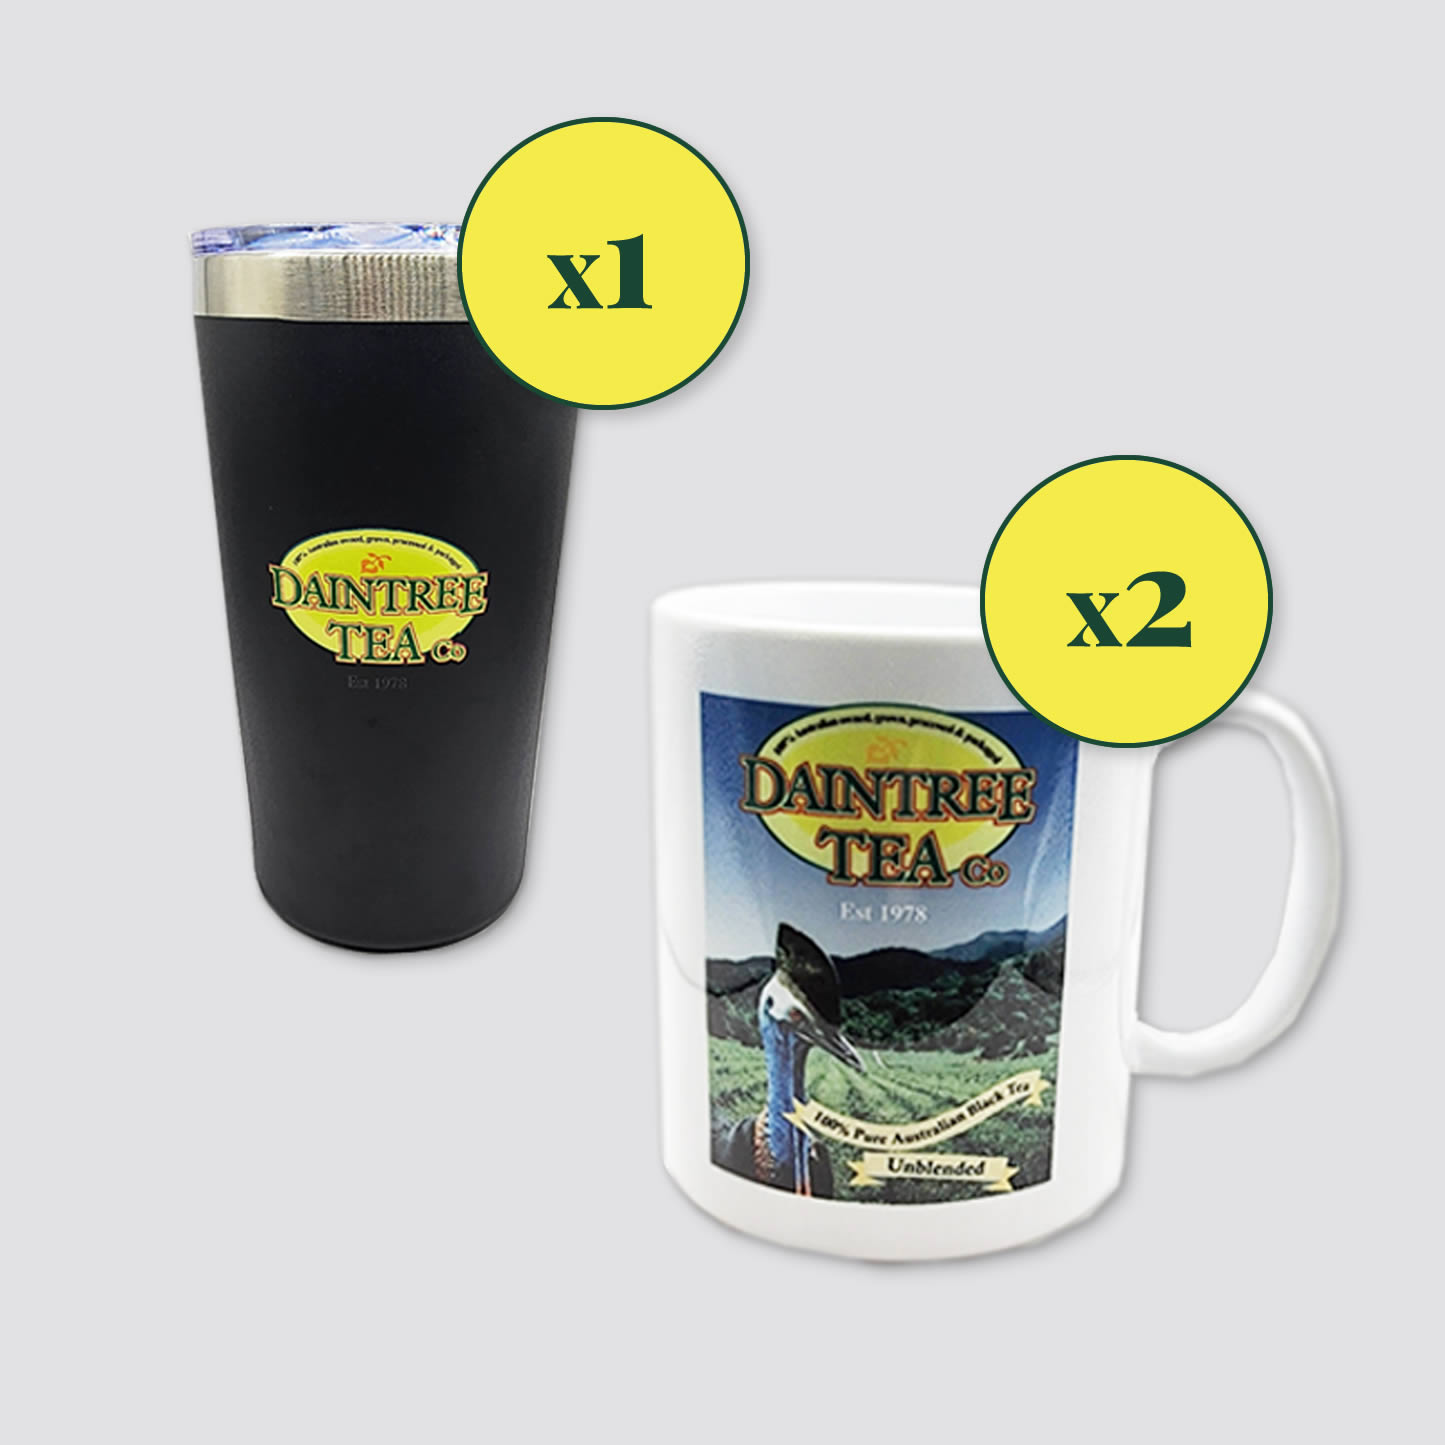 Daintree Tea travel mug plus x2 Daintree Tea mugs